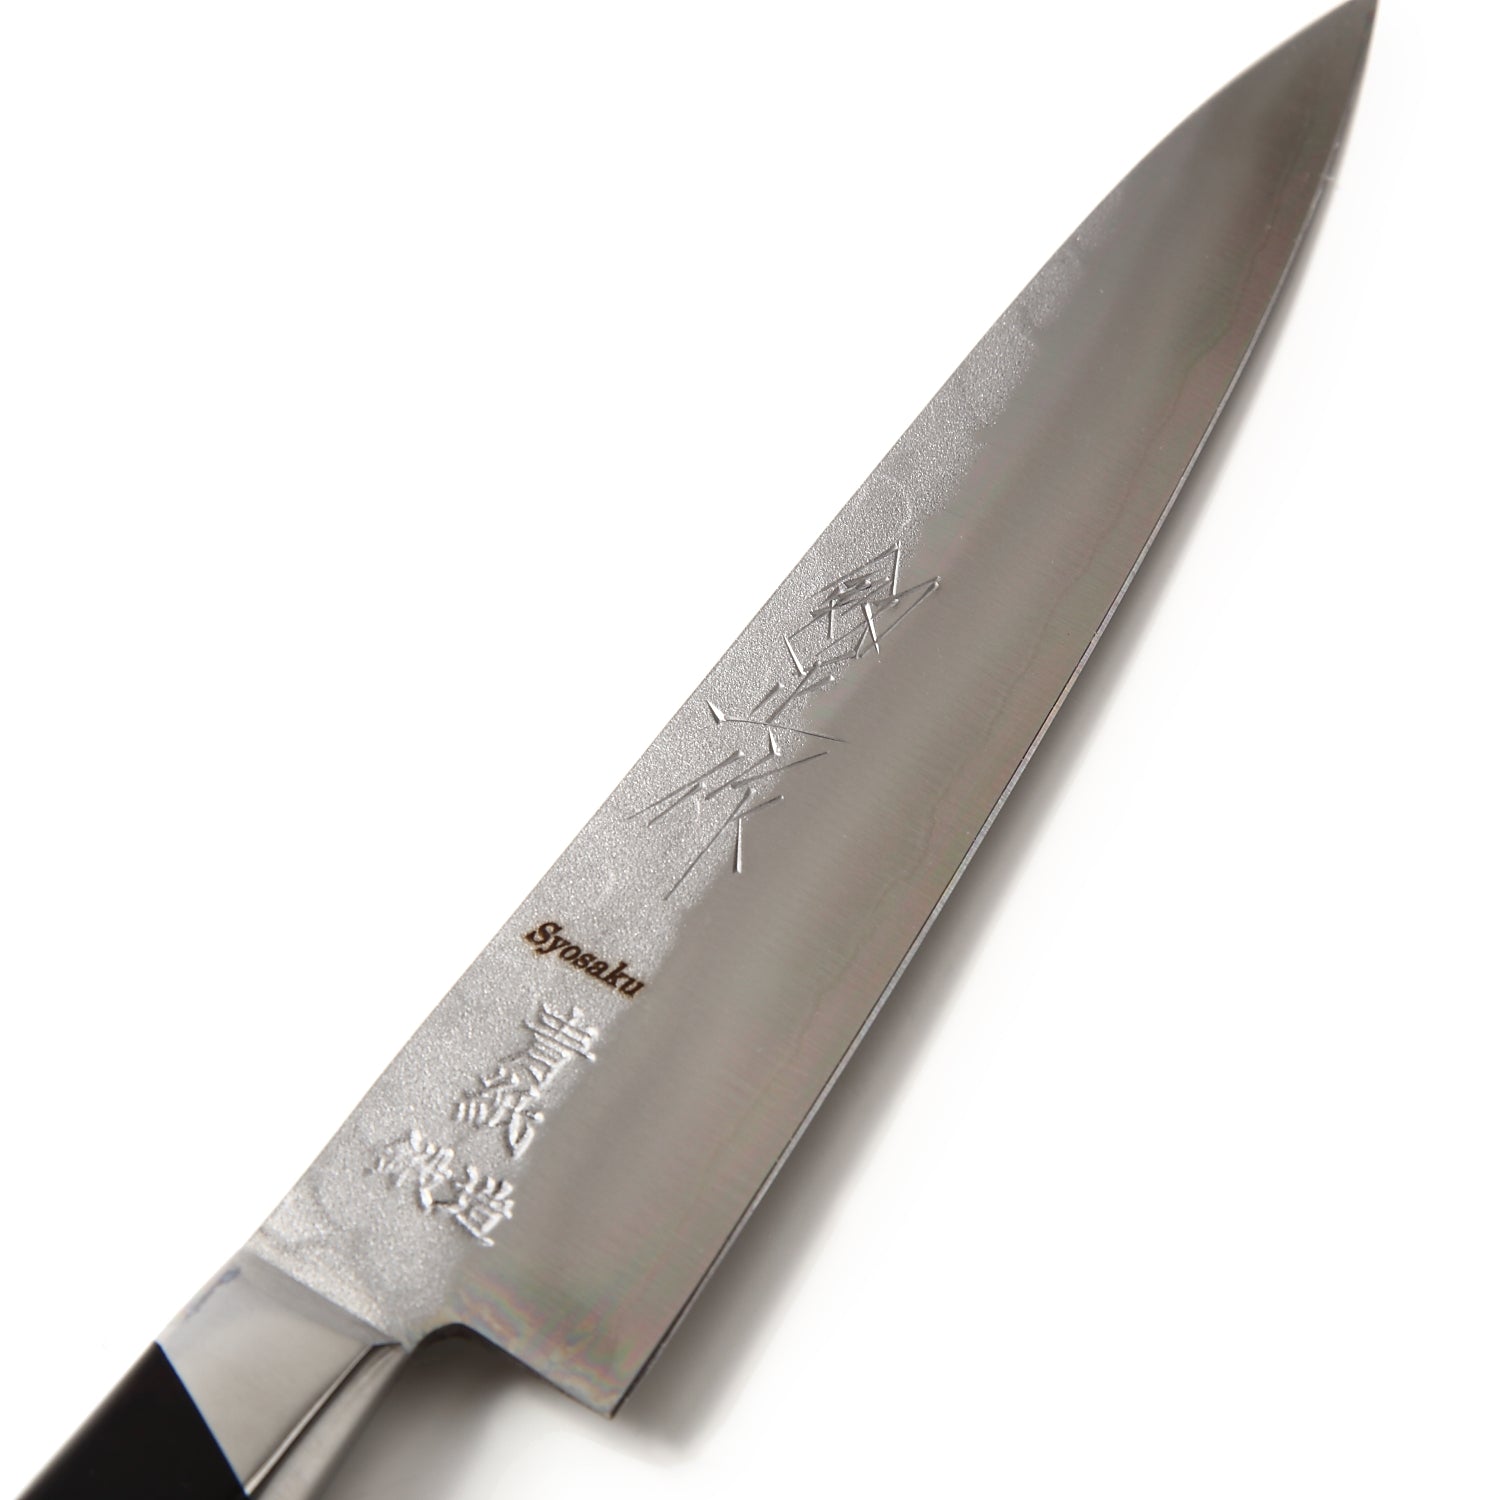 Syosaku Japanese Petty Knife Aoko (Blue Steel) No.2 Black Pakkawood Handle, 5.3-inch (135mm)